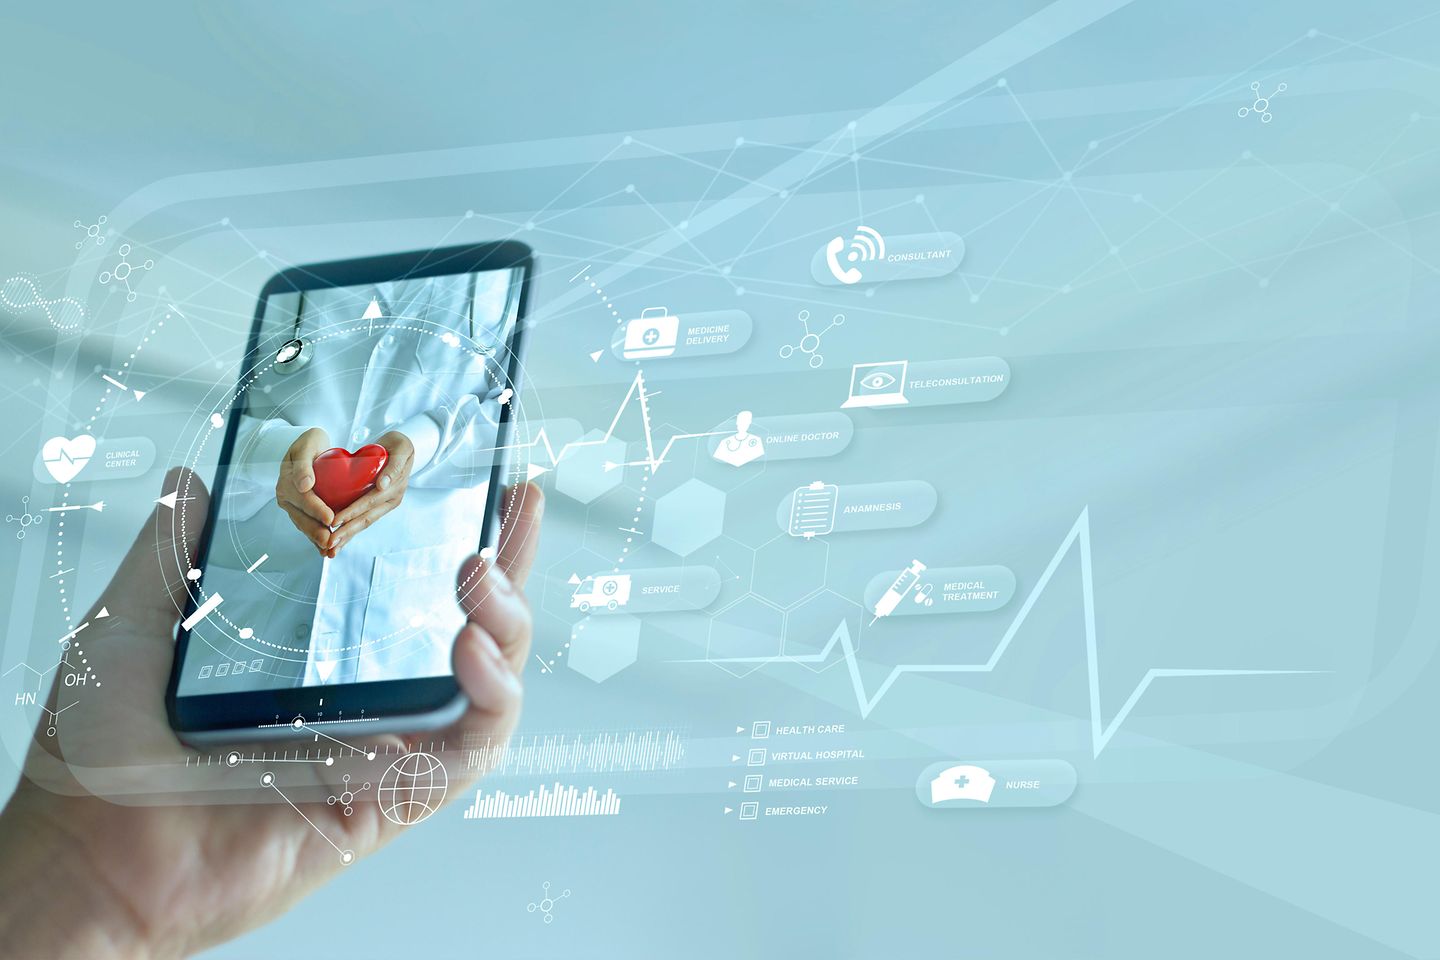 Diagnóstico y consulta médica en línea en smartphone, Comunicación con el paciente en red, Tecnología médica e innovadora.